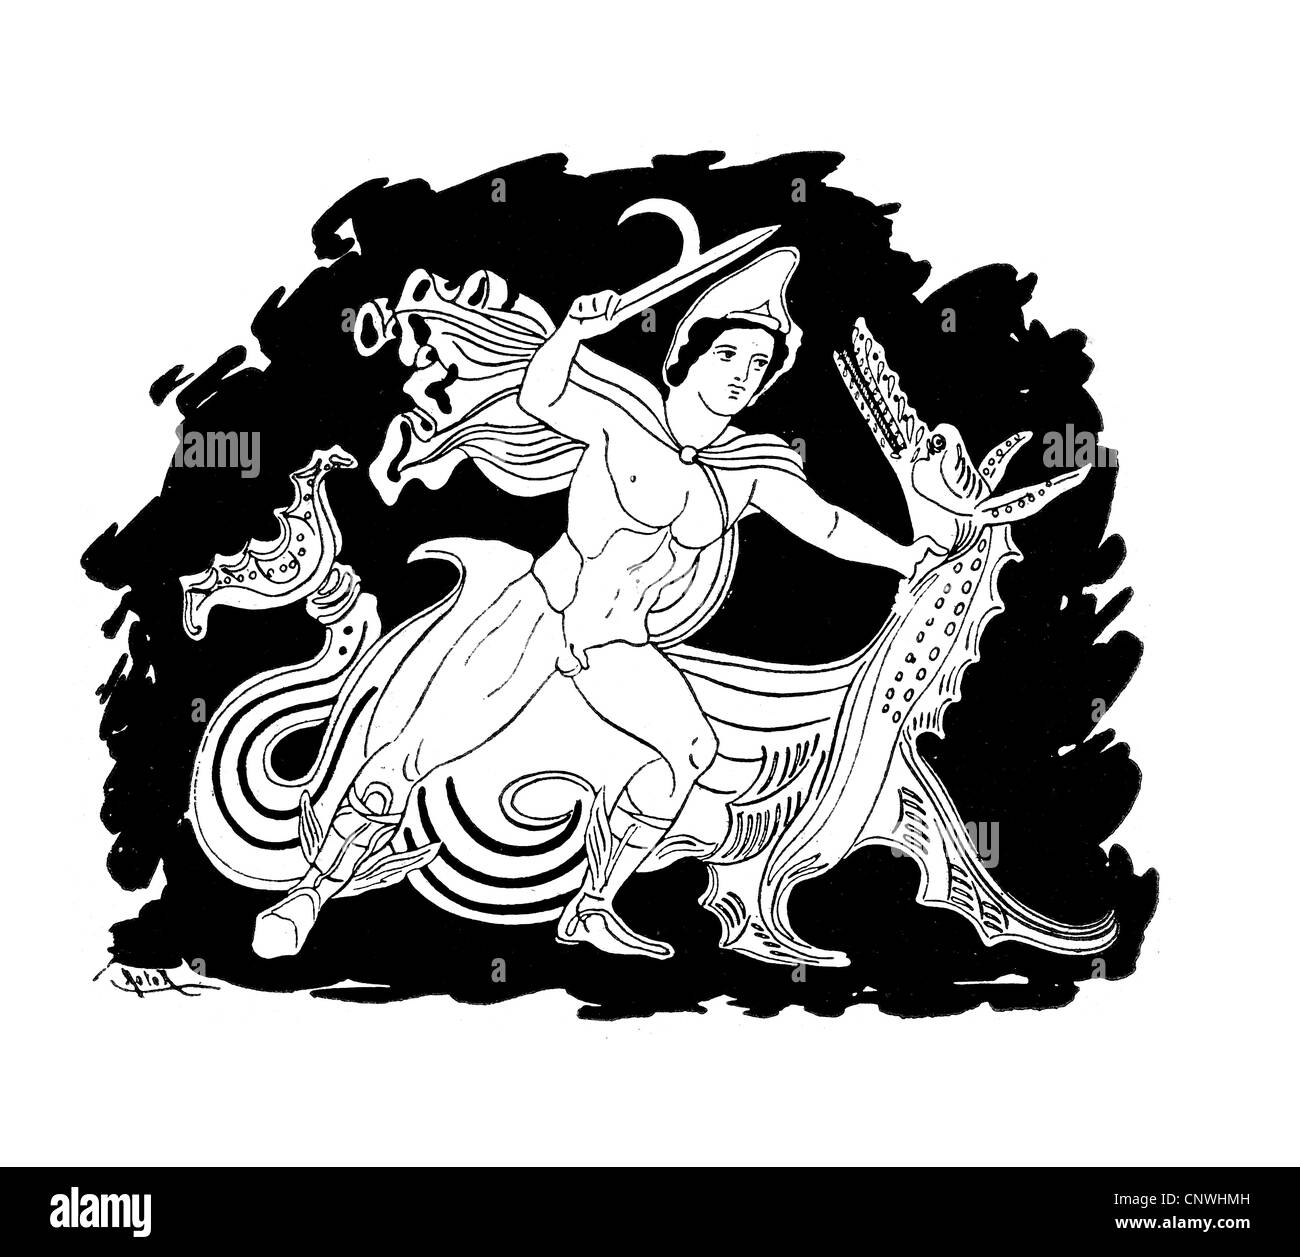 Un antiguo héroe griego matando un dragón o gusano Foto de stock